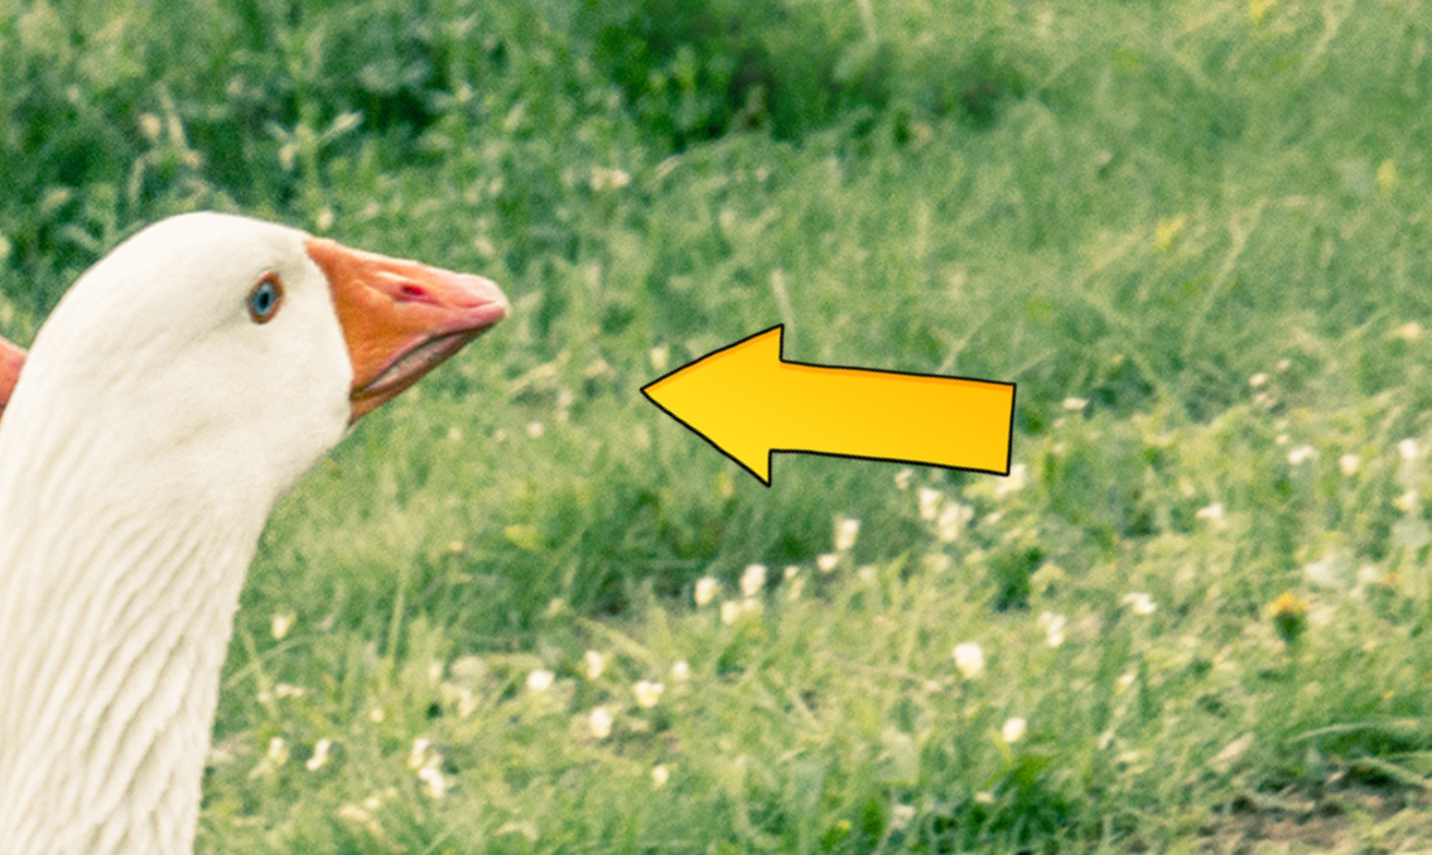 A white goose with an orange beak